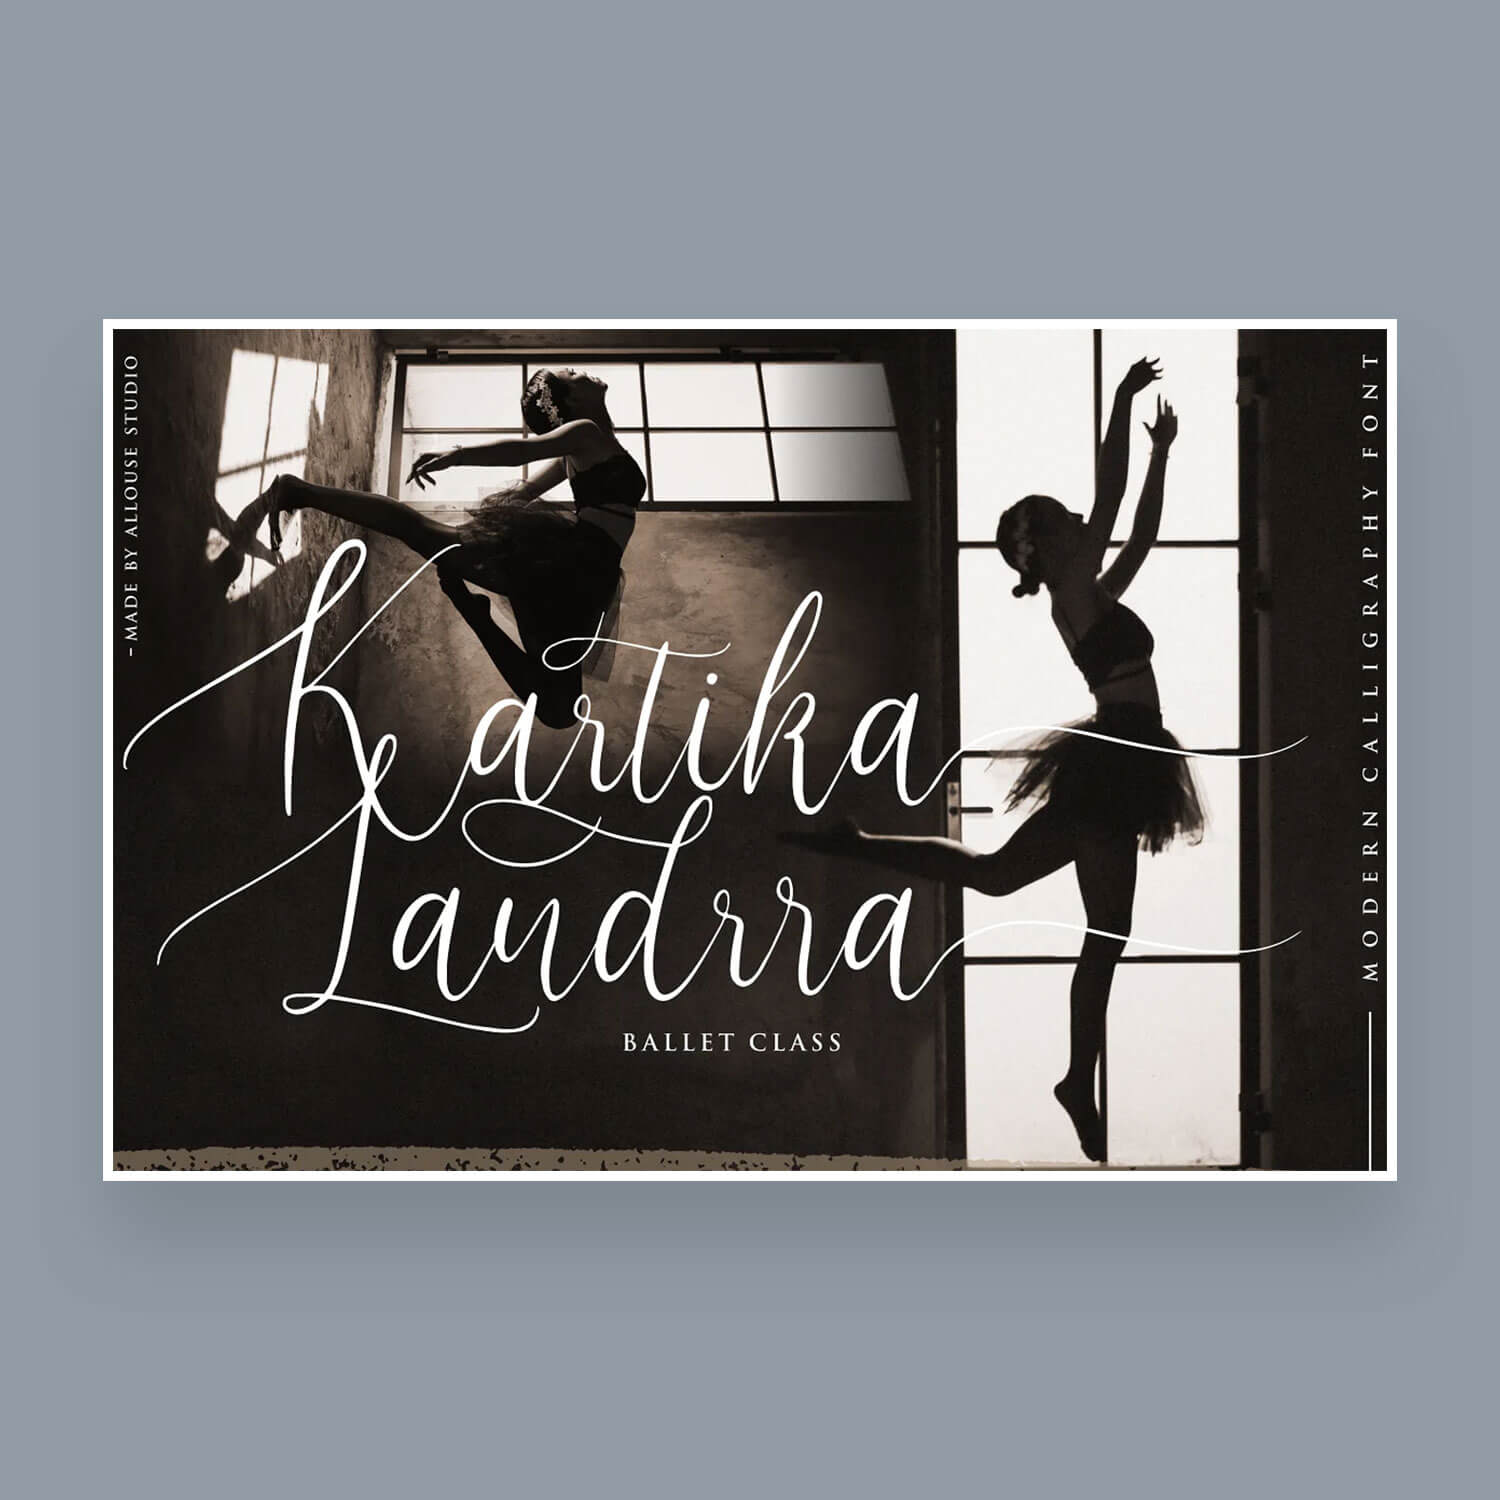 Ballet Class: Kartika Landrra.